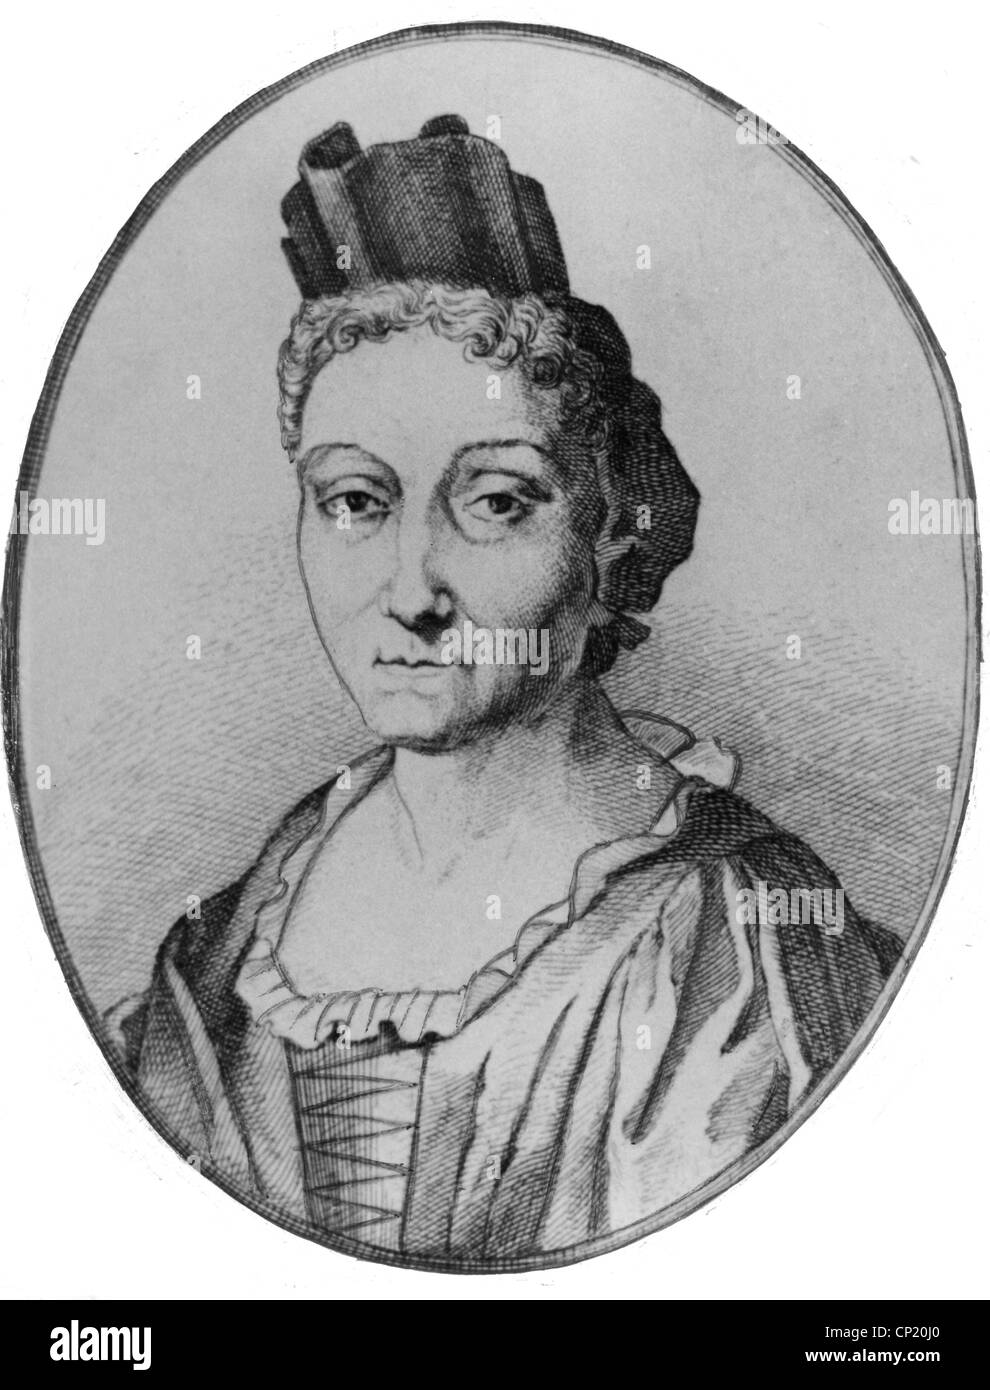 Merian, Maria Sibylla, 2.4. 1647 - 13.1.1717, pintor e ilustrador Alemán, retrato, grabado en cobre, circa 1700, Copyright del artista no ha de ser borrado Foto de stock